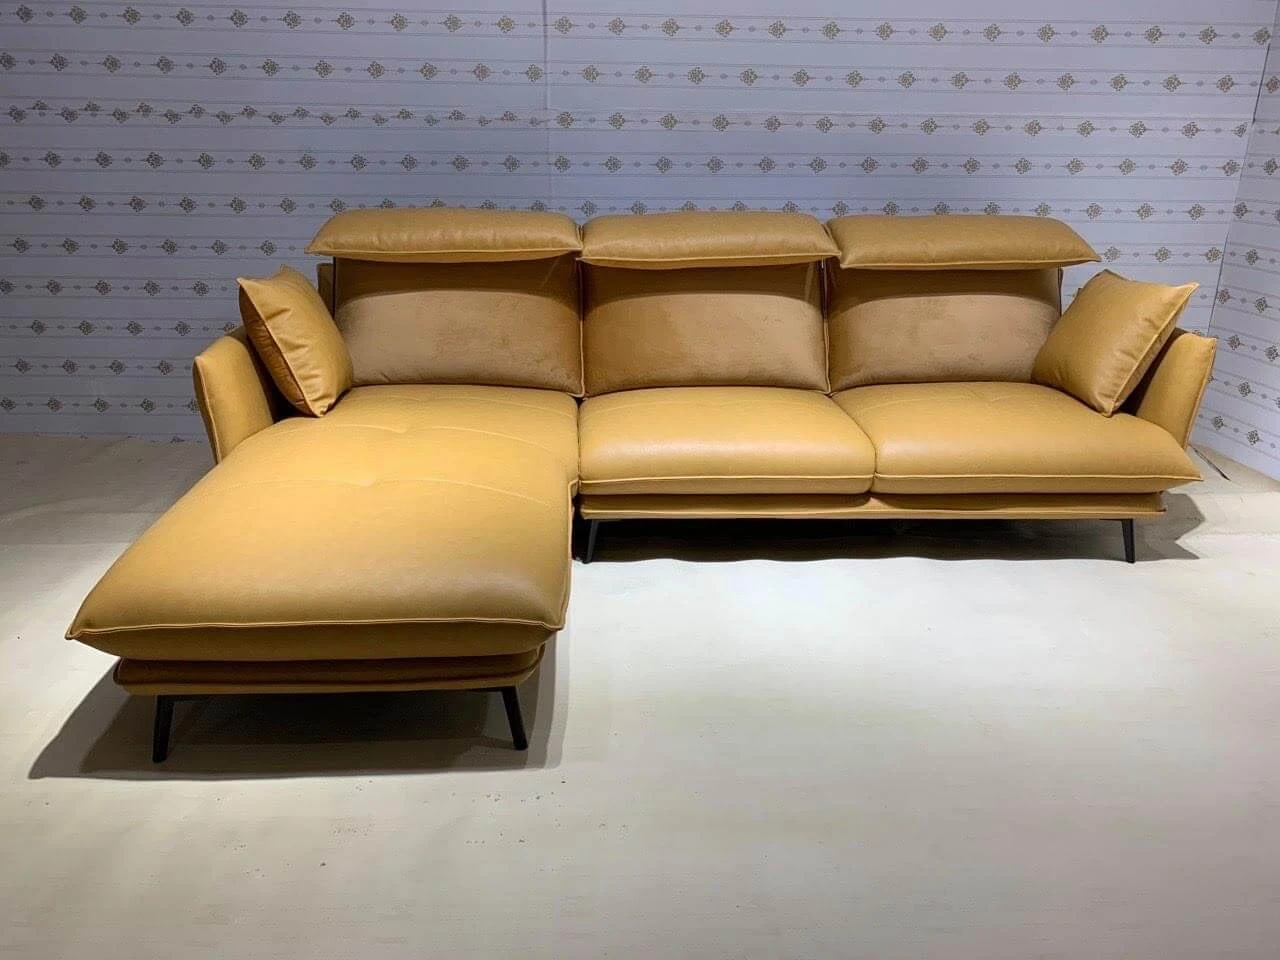 Nhờ nhân viên các tại các showroom tư vấn đề lựa chọn được kích thước sofa phù hợp